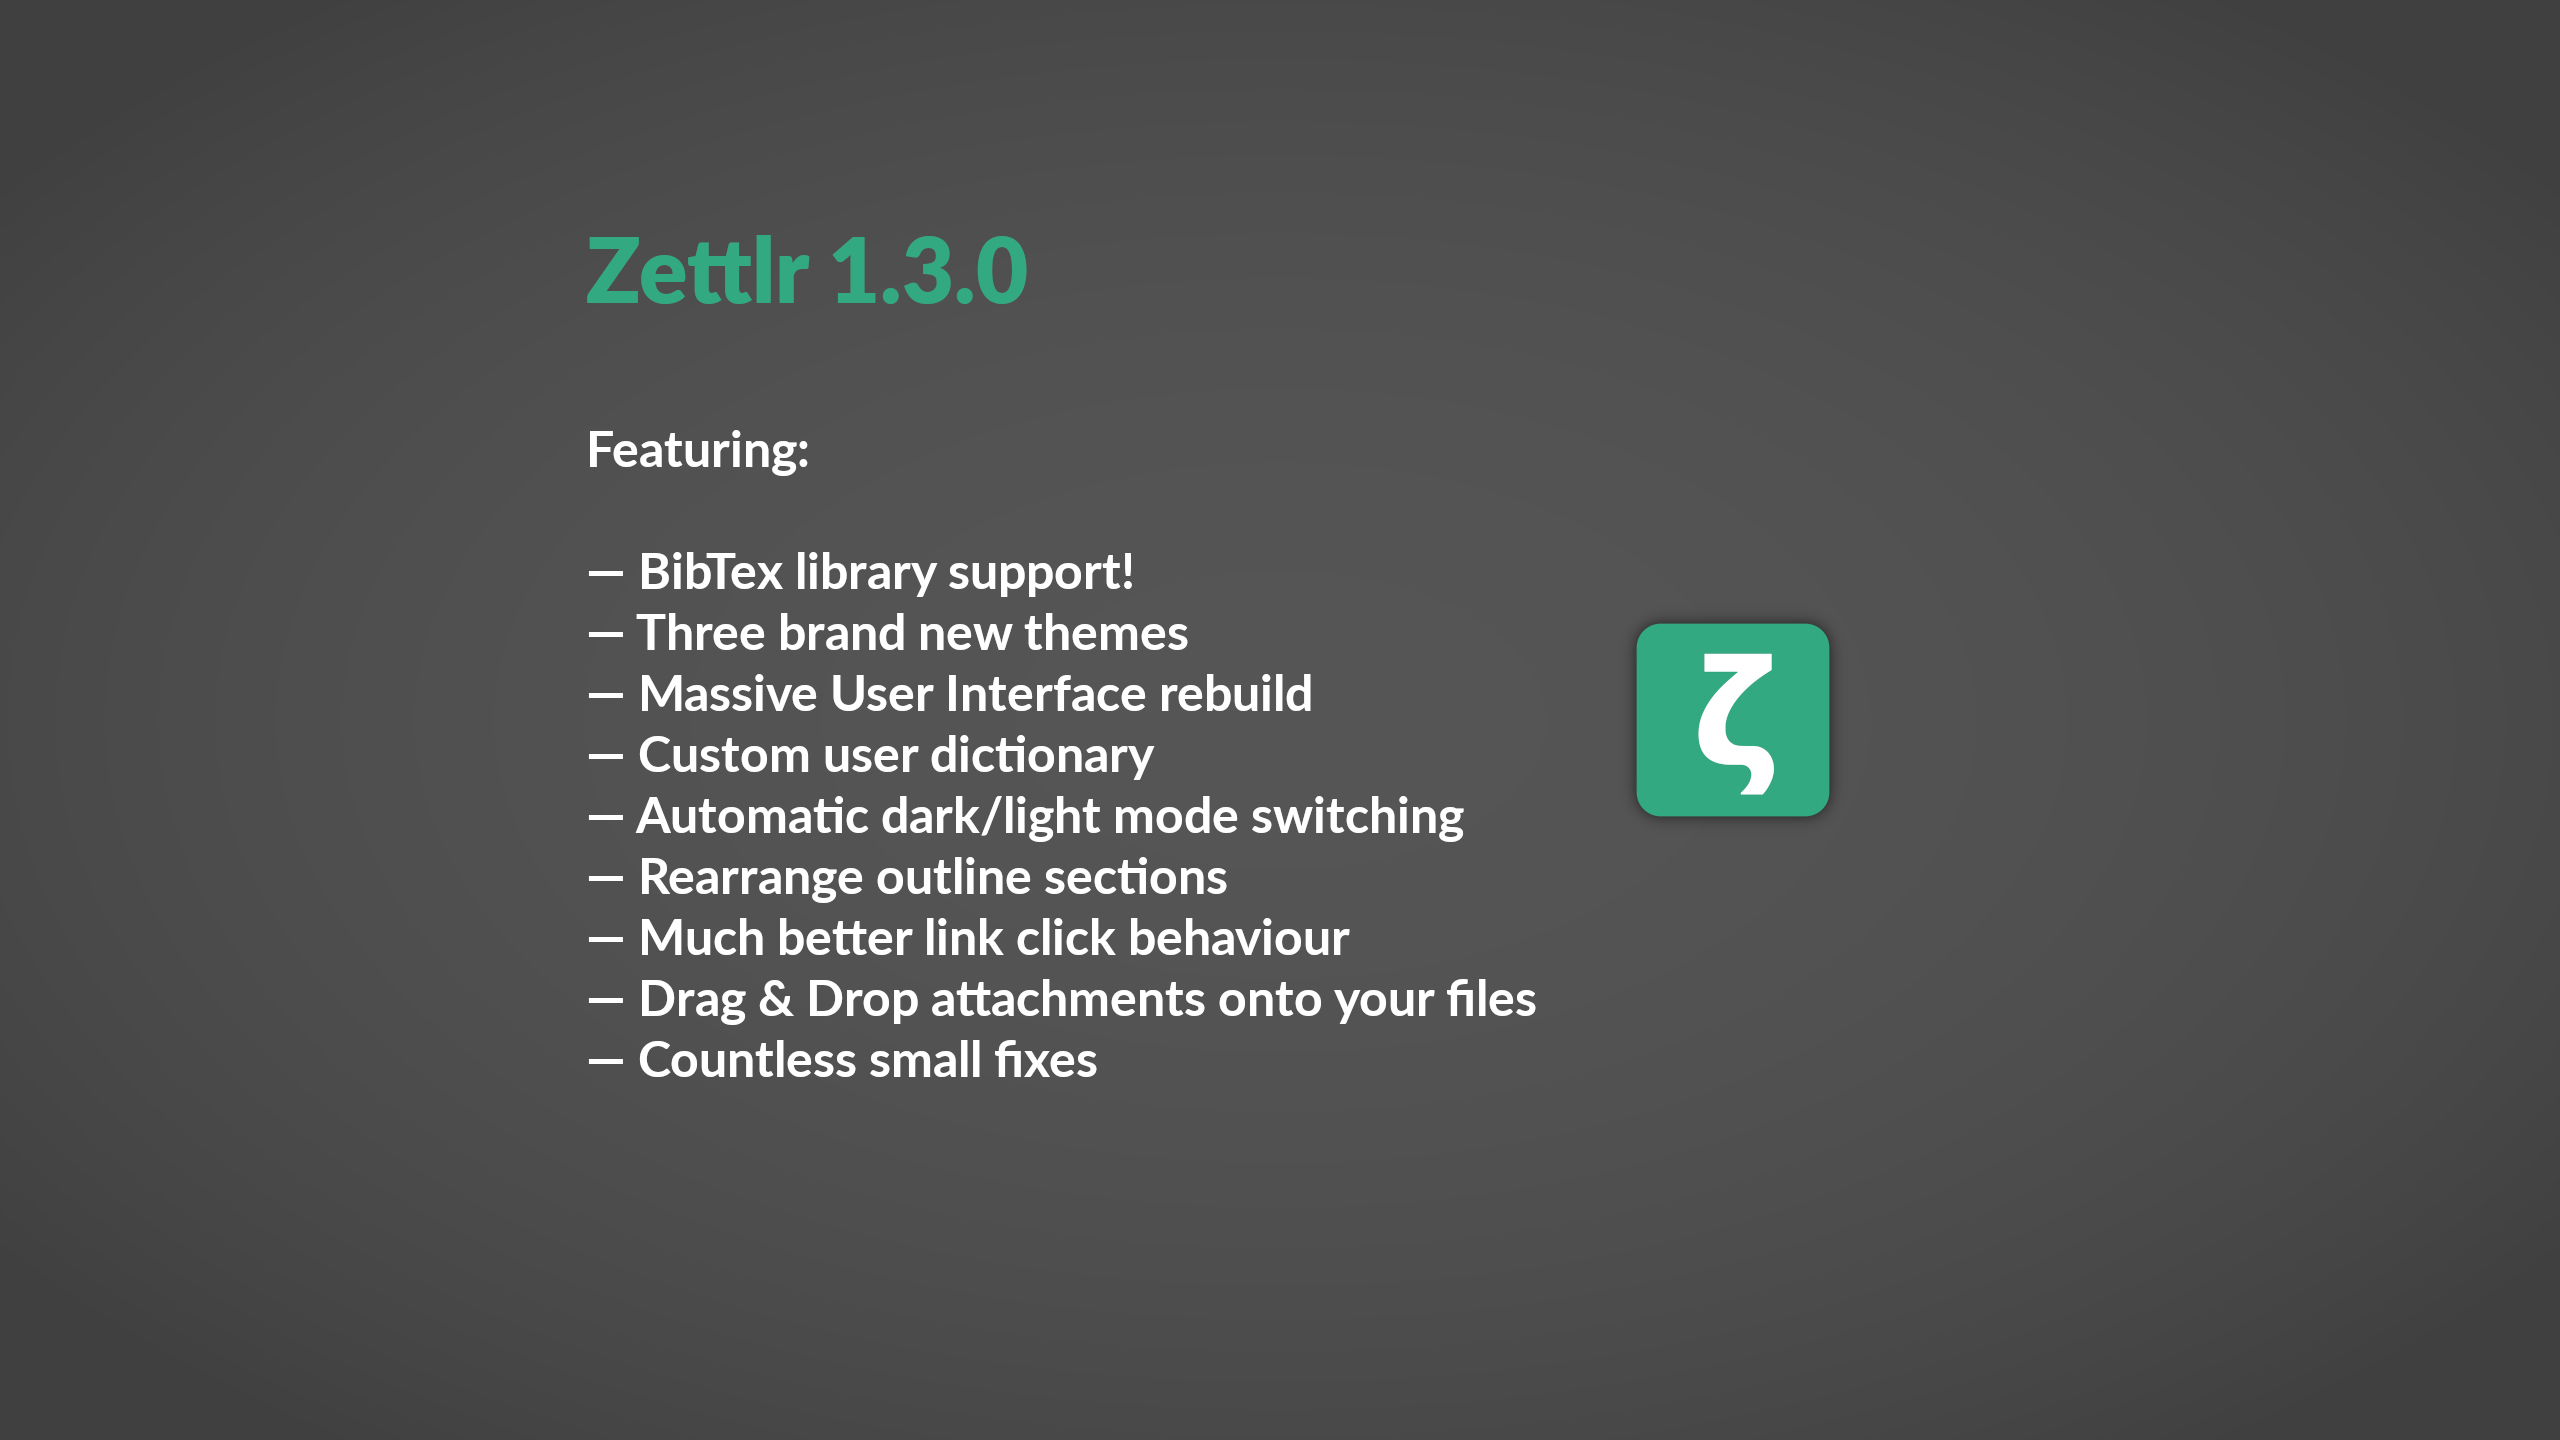 Zettlr 1.3.0 released